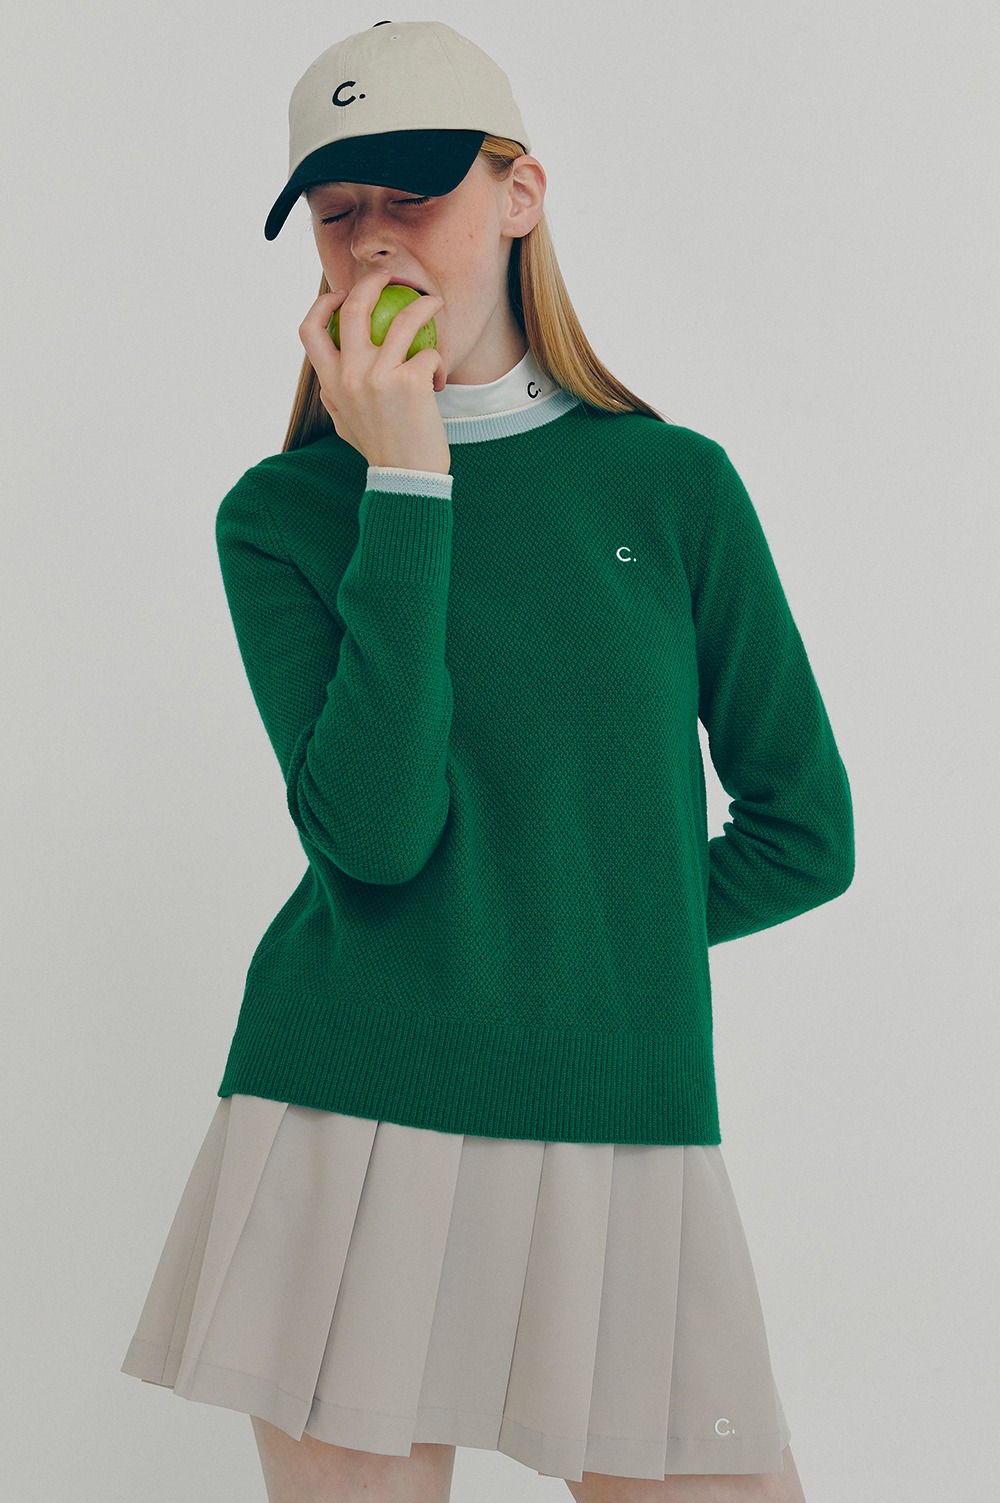 clove - [FW21 clove] Cashmere Blended Line Knit_Women (Green)